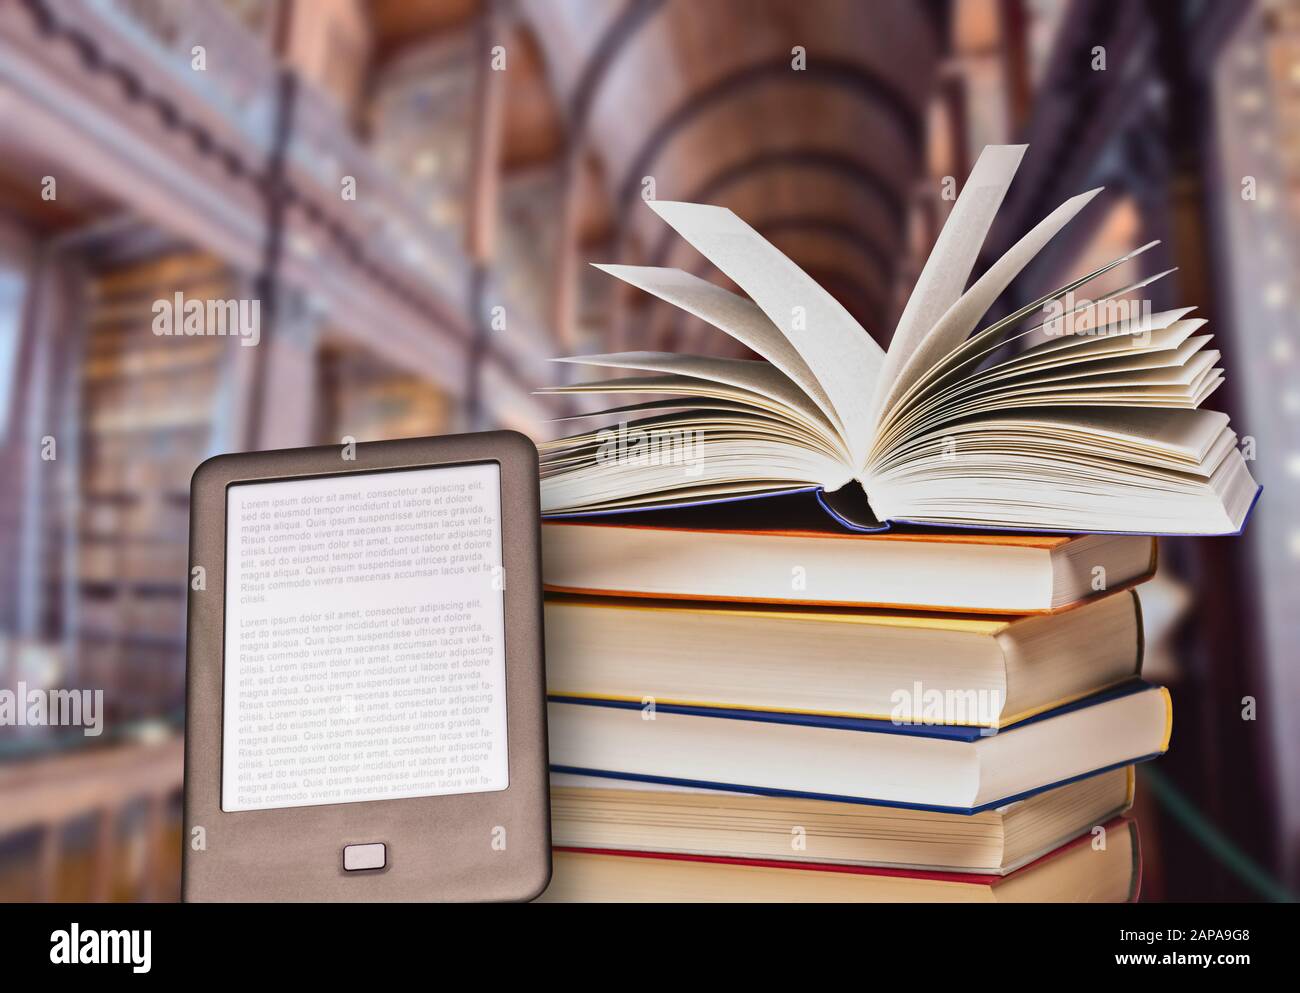 Stapel von Büchern mit einem offenen Buch- und E-Book-Reader in einer großen Bibliothek Stockfoto